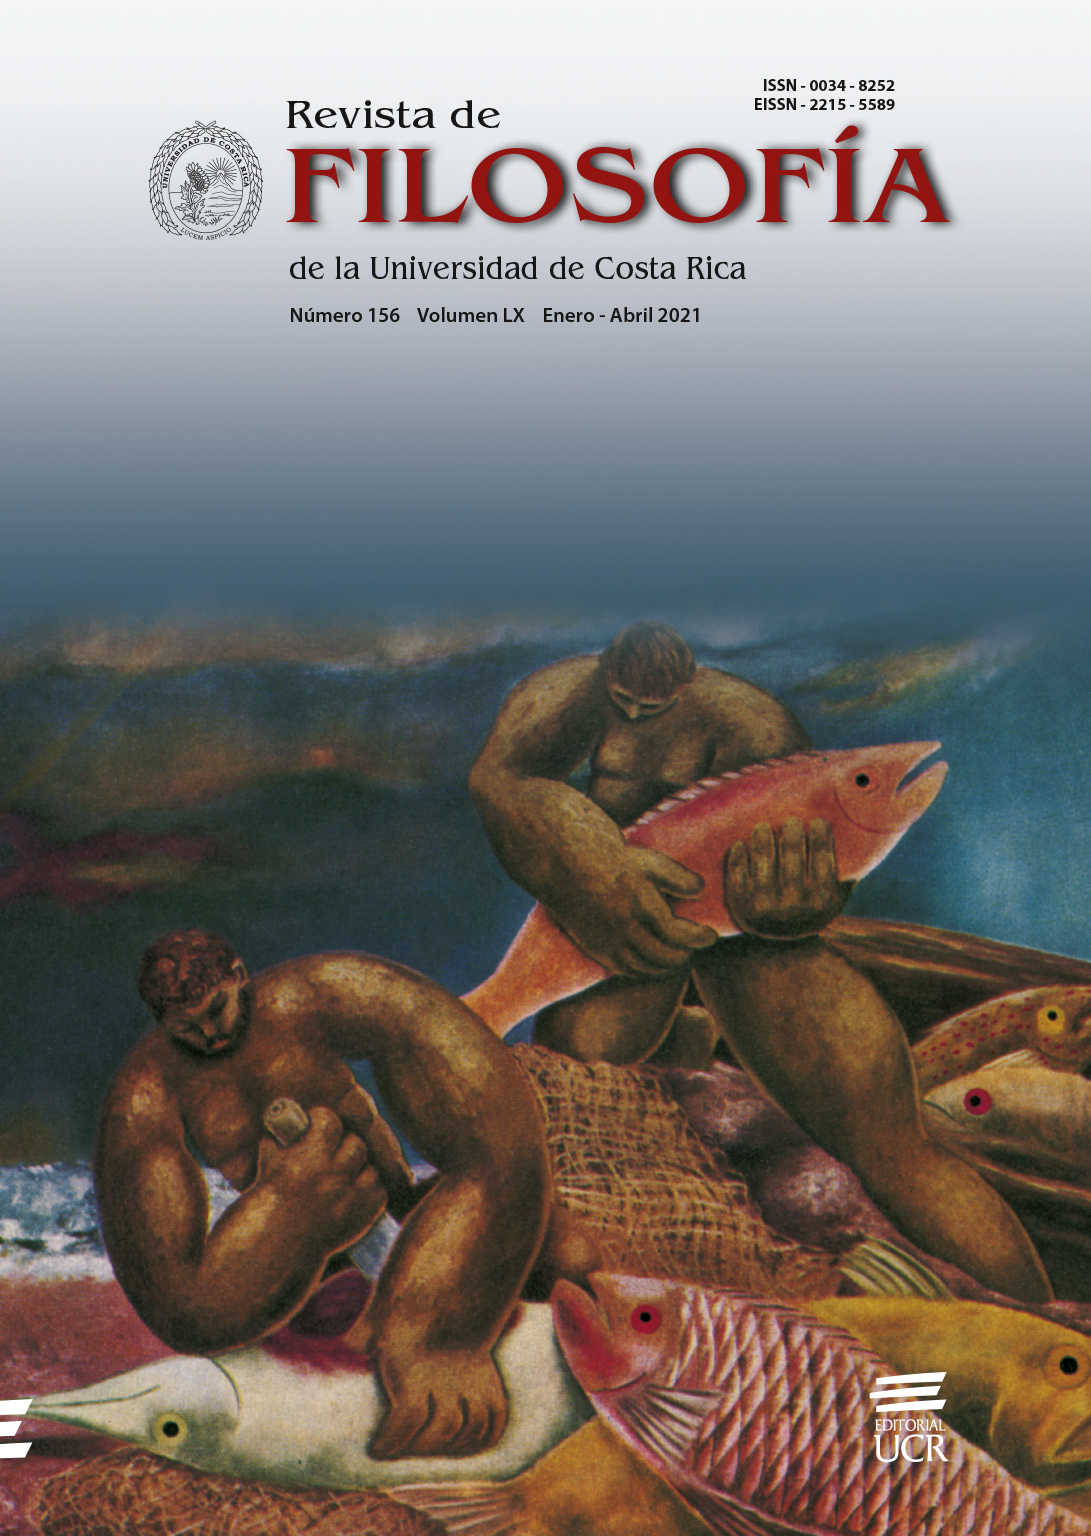 Portada de la revista de Filosofía de la Universidad de Costa Rica, en imagen "pescadores de Cojimar"